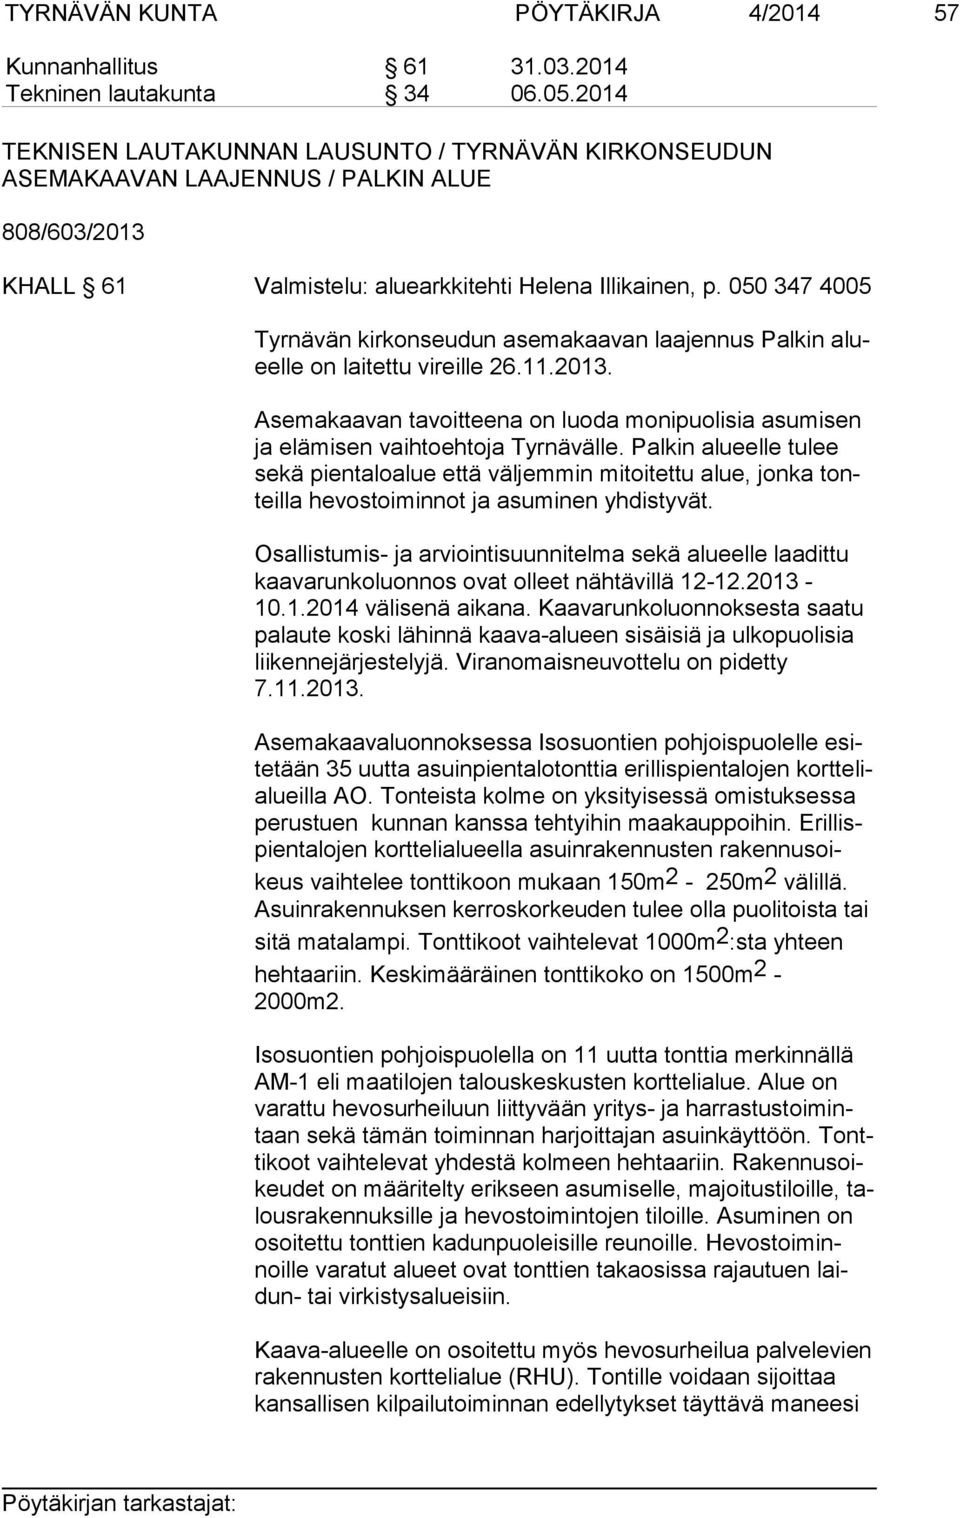 050 347 4005 Tyrnävän kirkonseudun asemakaavan laajennus Palkin alueel le on laitettu vireille 26.11.2013. Asemakaavan tavoitteena on luoda monipuolisia asumisen ja elämisen vaihtoehtoja Tyrnävälle.